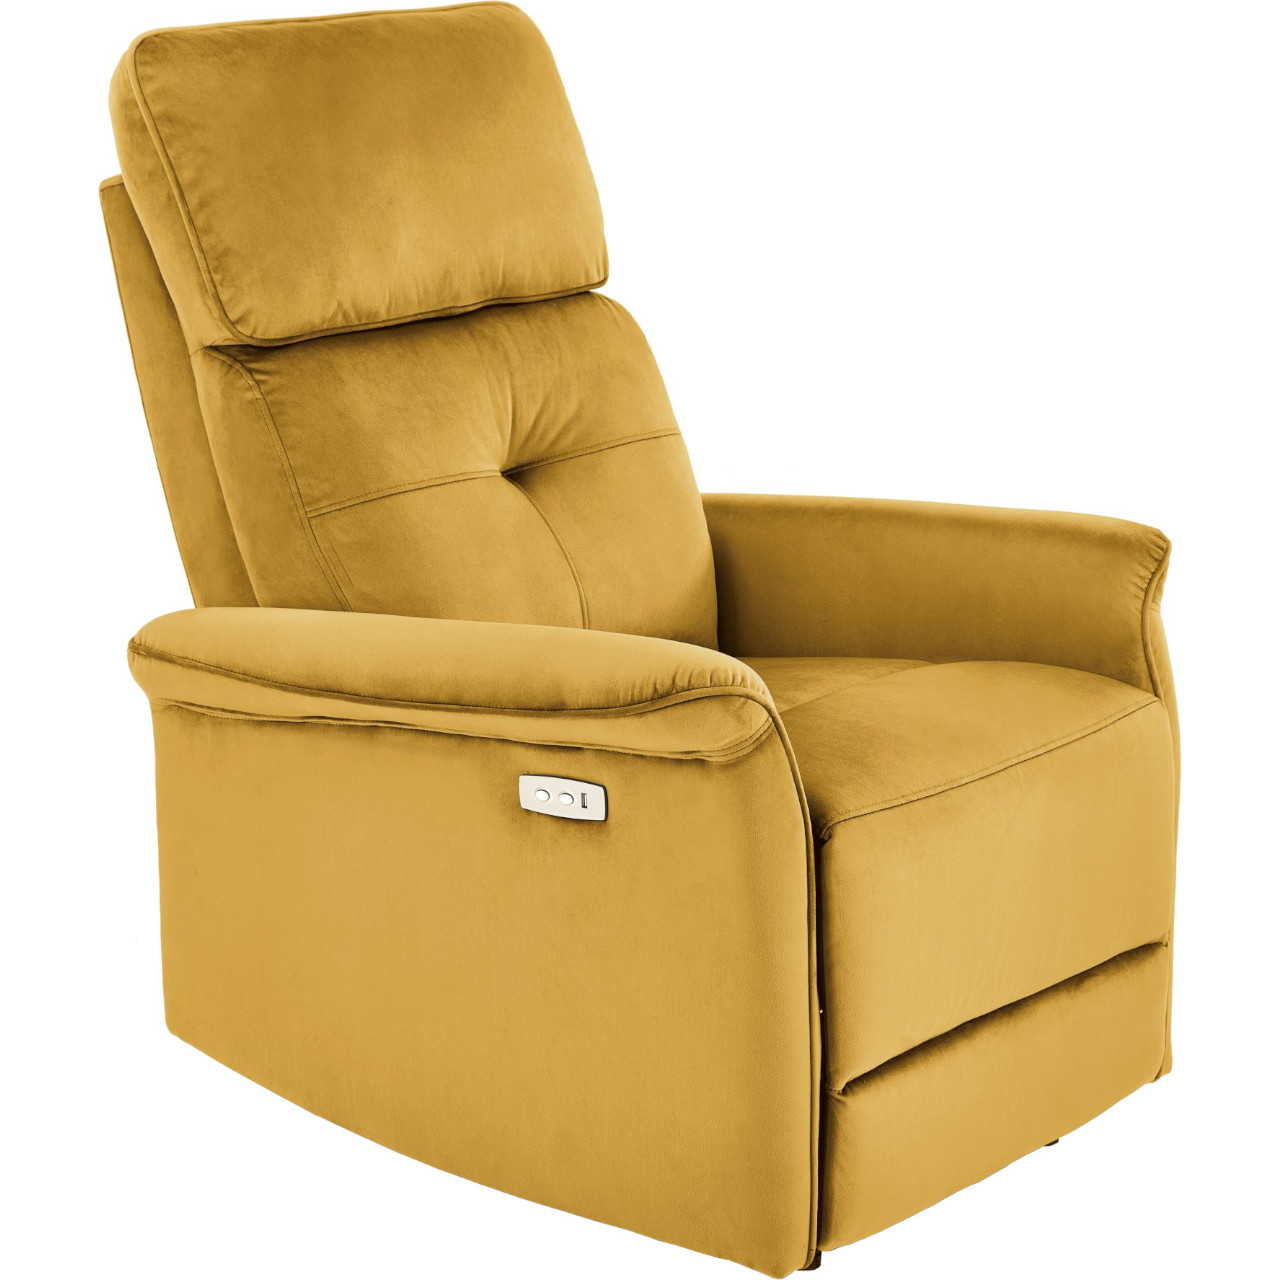 Recliner armchair SAFIR mustard yellow